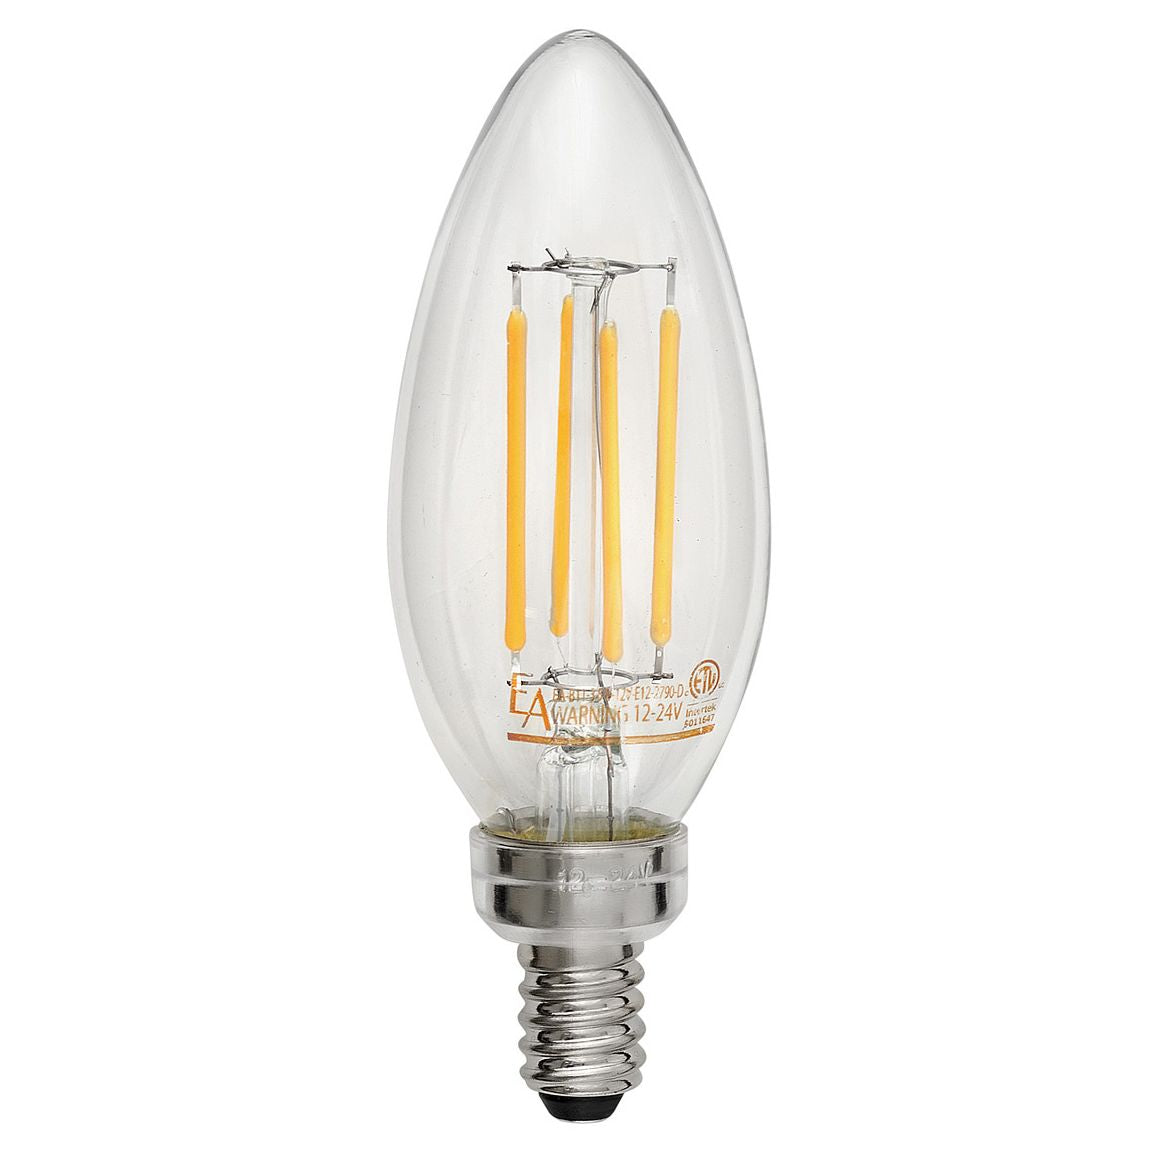 Hinkley E12LED12V - Low Voltage 3.5 Watt LED Light Bulb, Candelabra Bulb Base (E12)